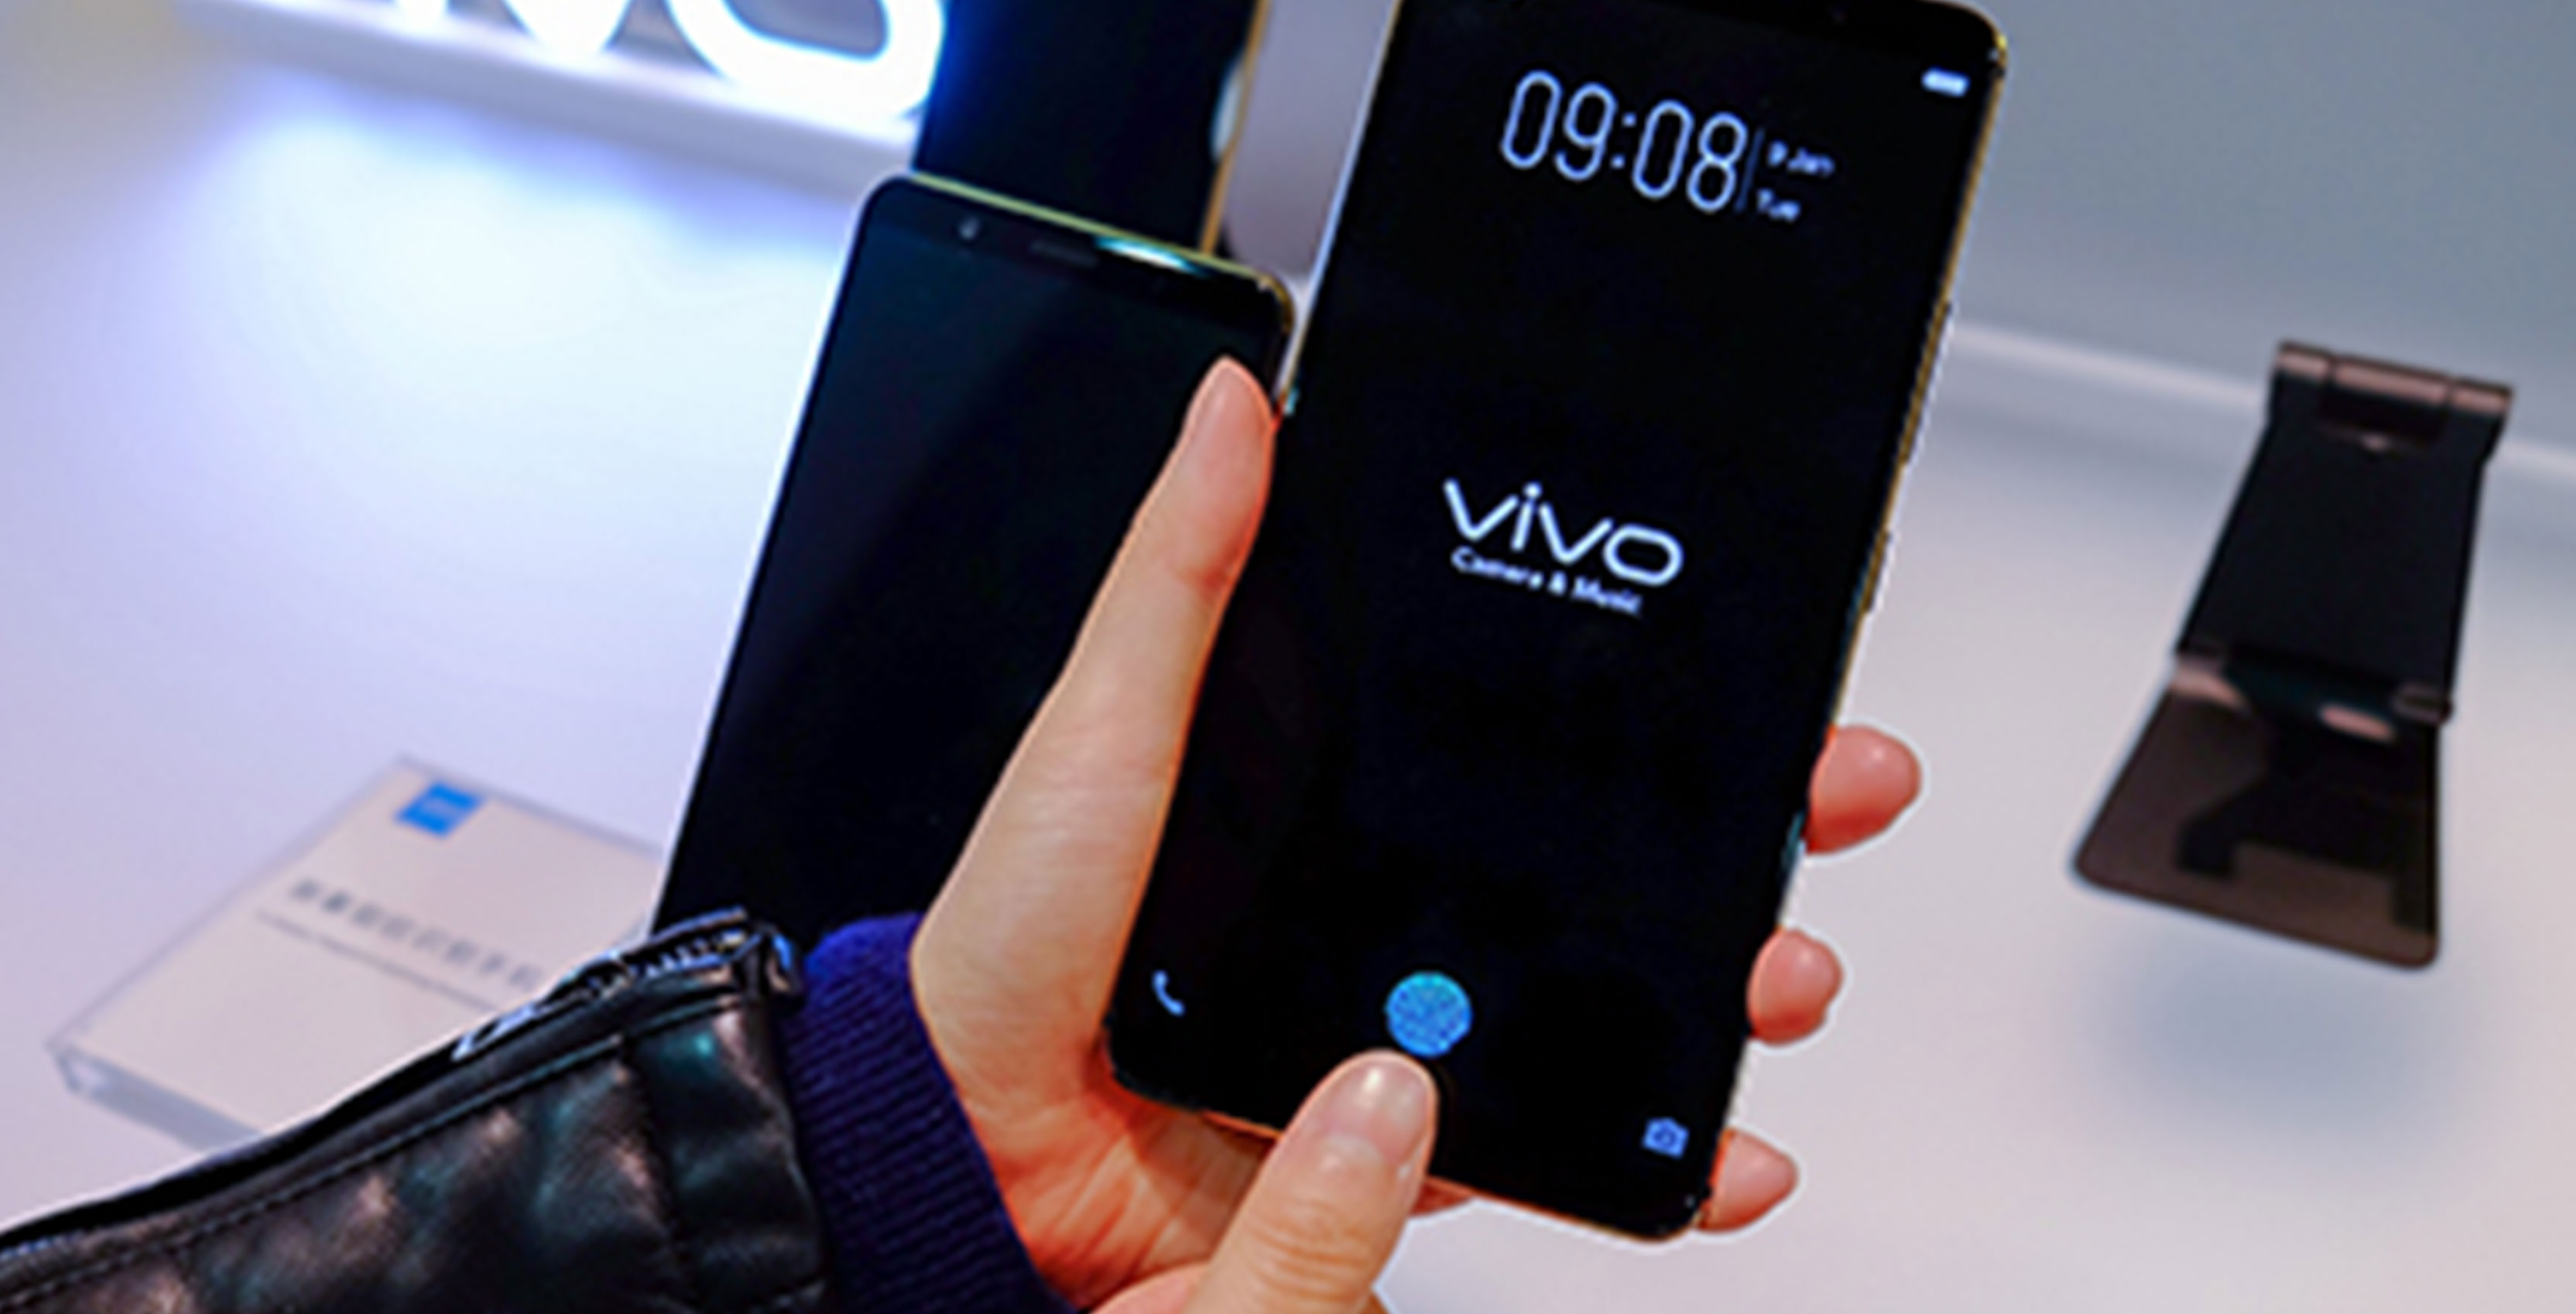 Vivo phone with in-display fingerprint scanner